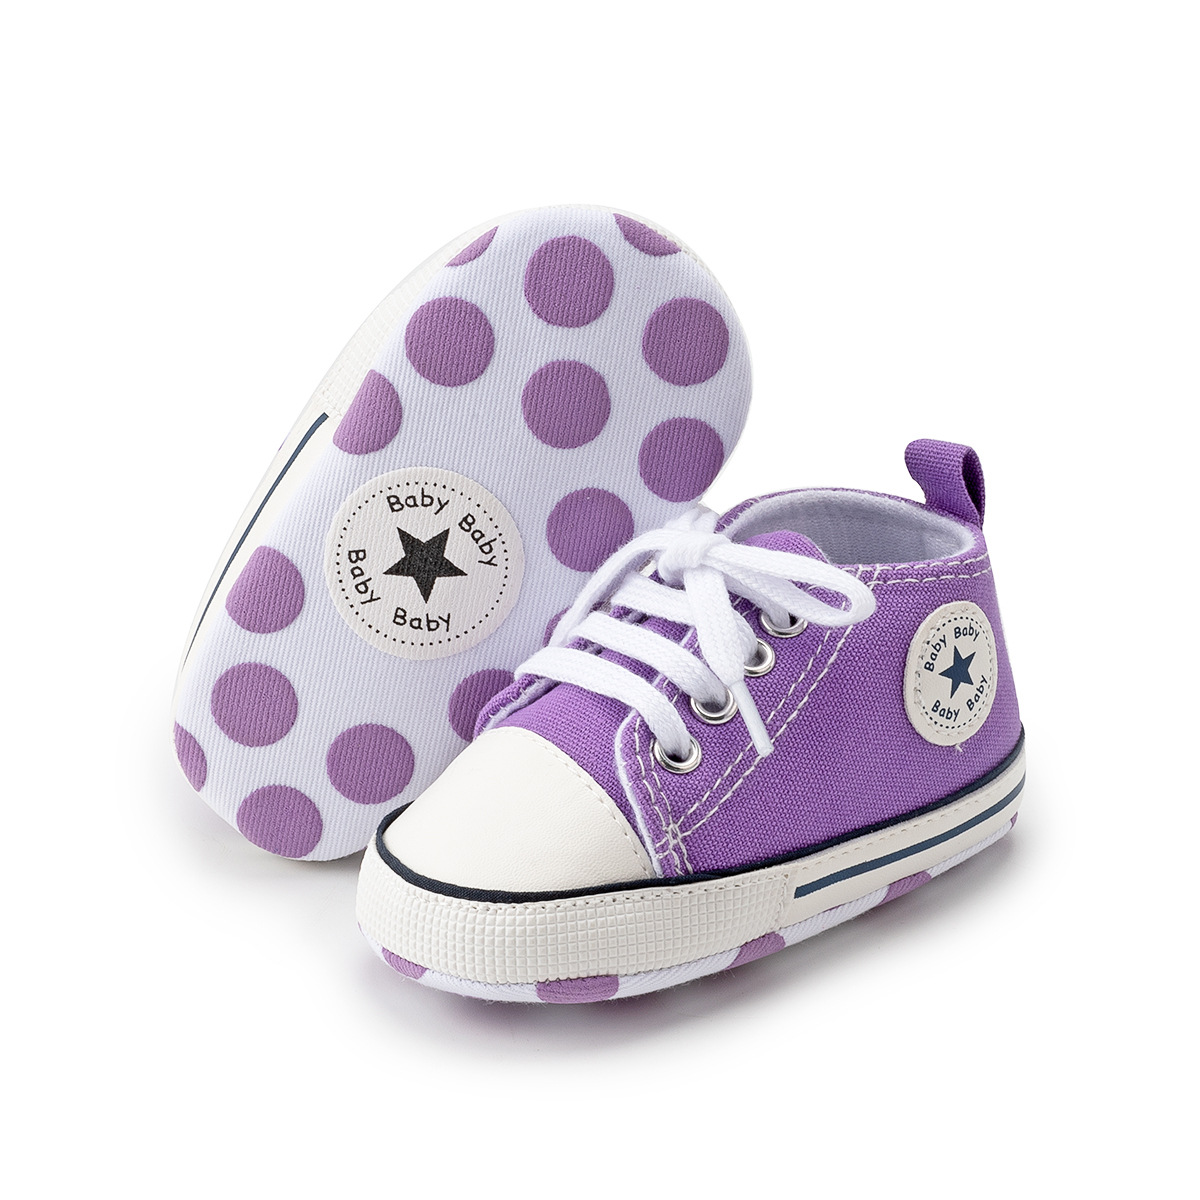 Chaussures bébé en Toile - Ref 3436764 Image 24